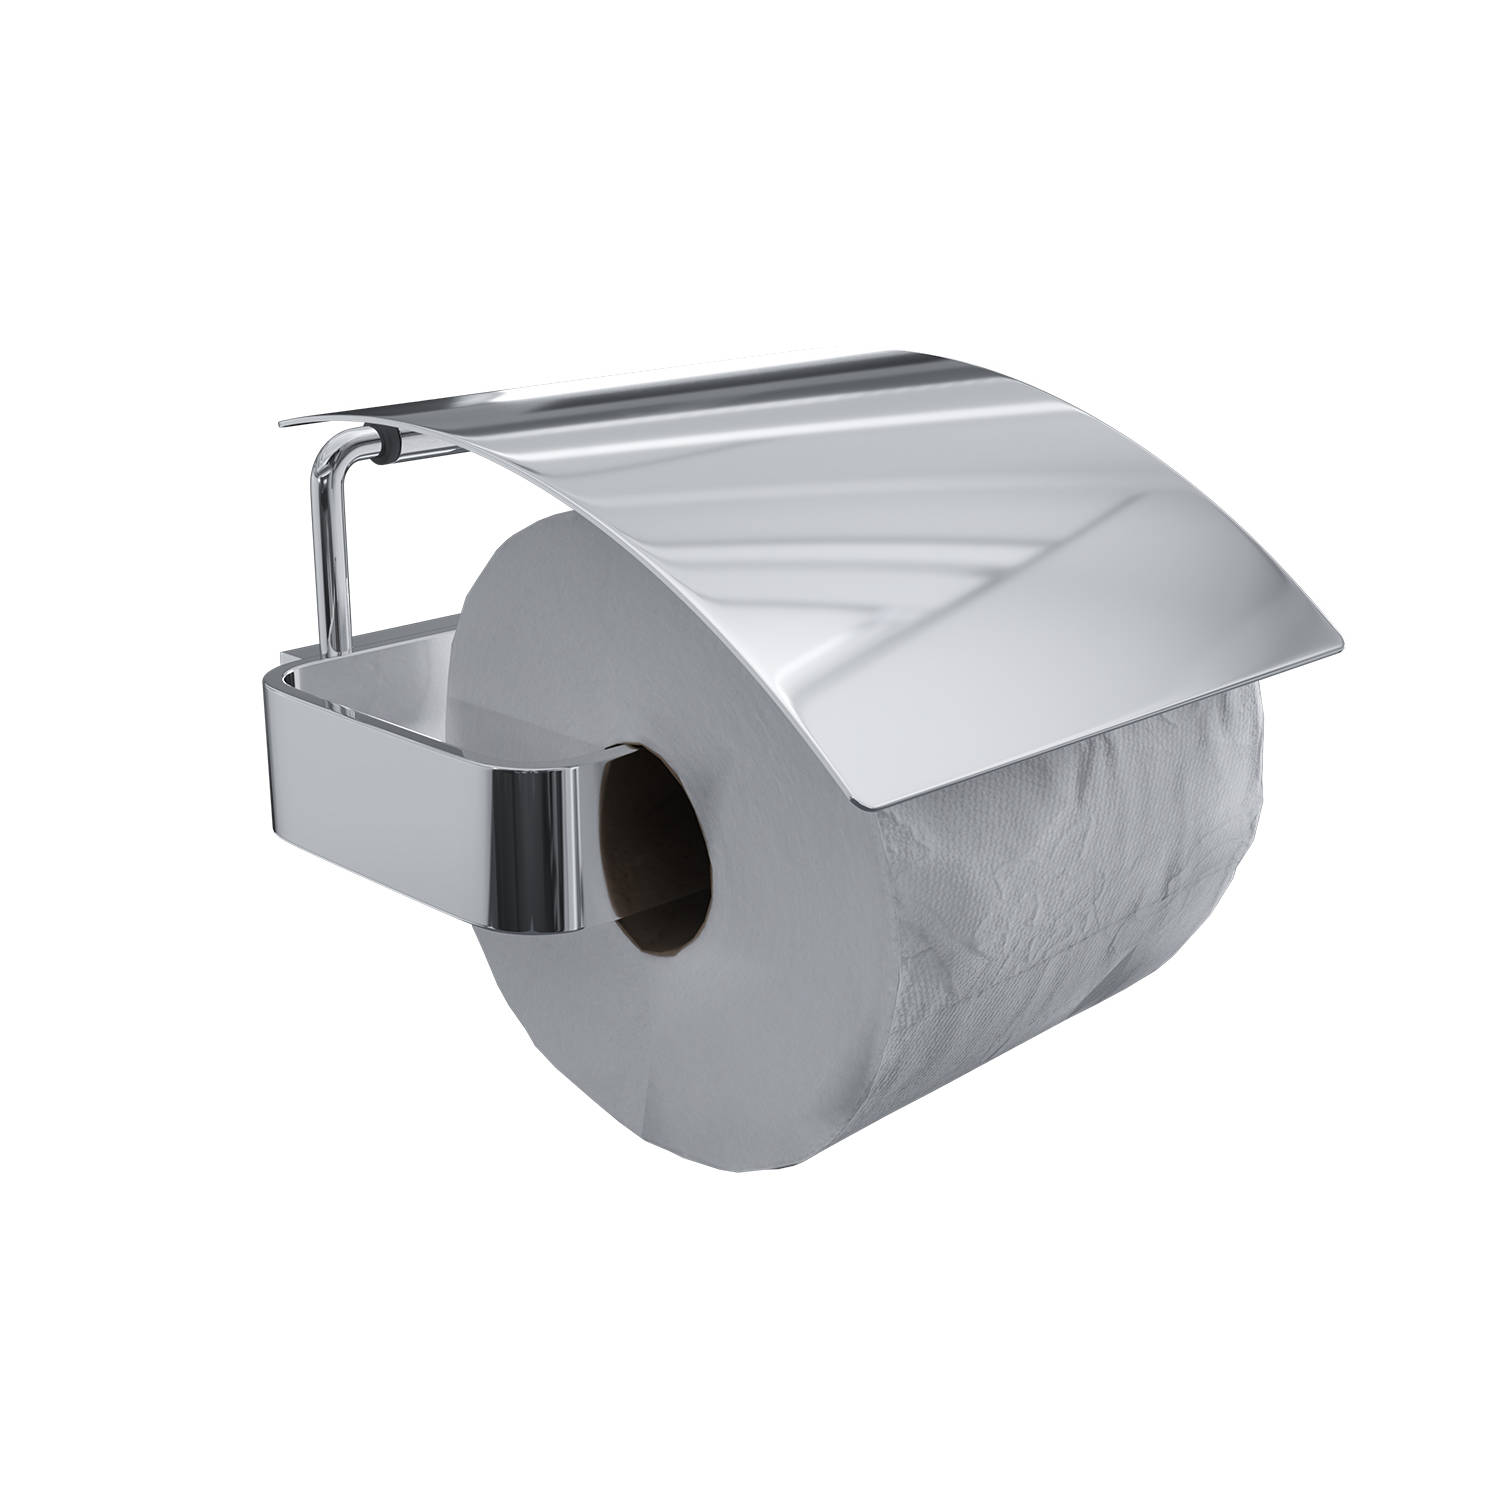 Preventie stapel Carry Luzzo® Piazzo Messing Toiletrolhouder met klep - wc rolhouder - chroom |  Blokker